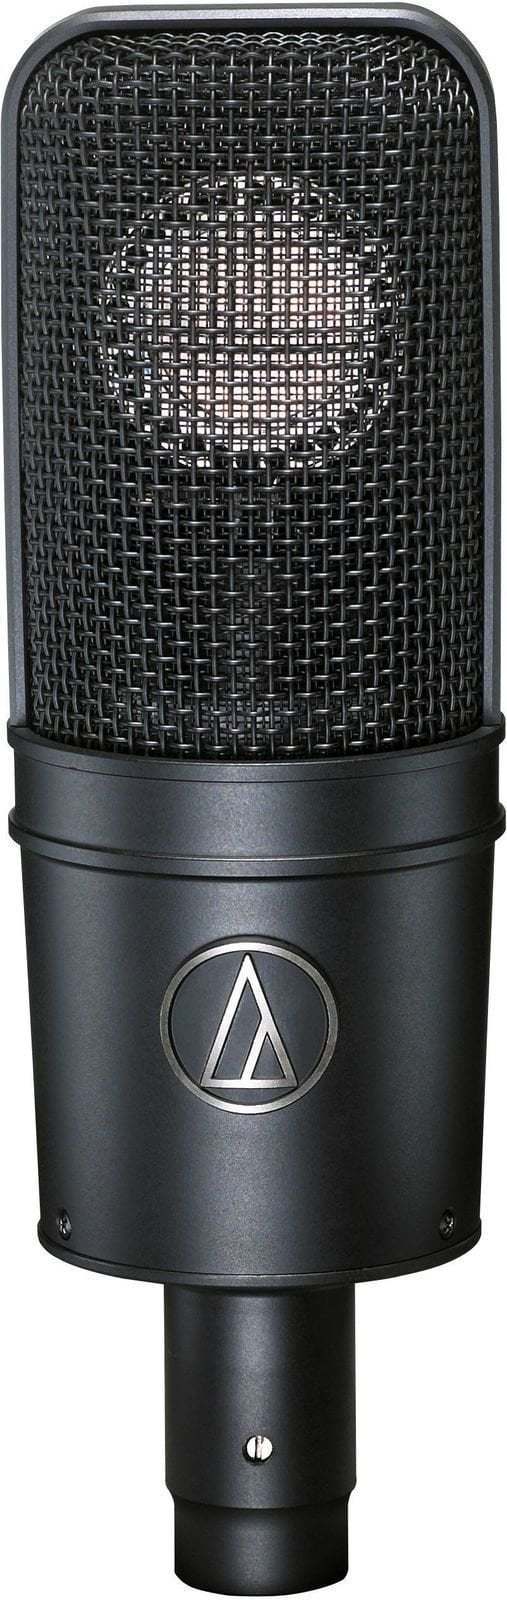 Microfon cu condensator pentru studio Audio-Technica AT4040